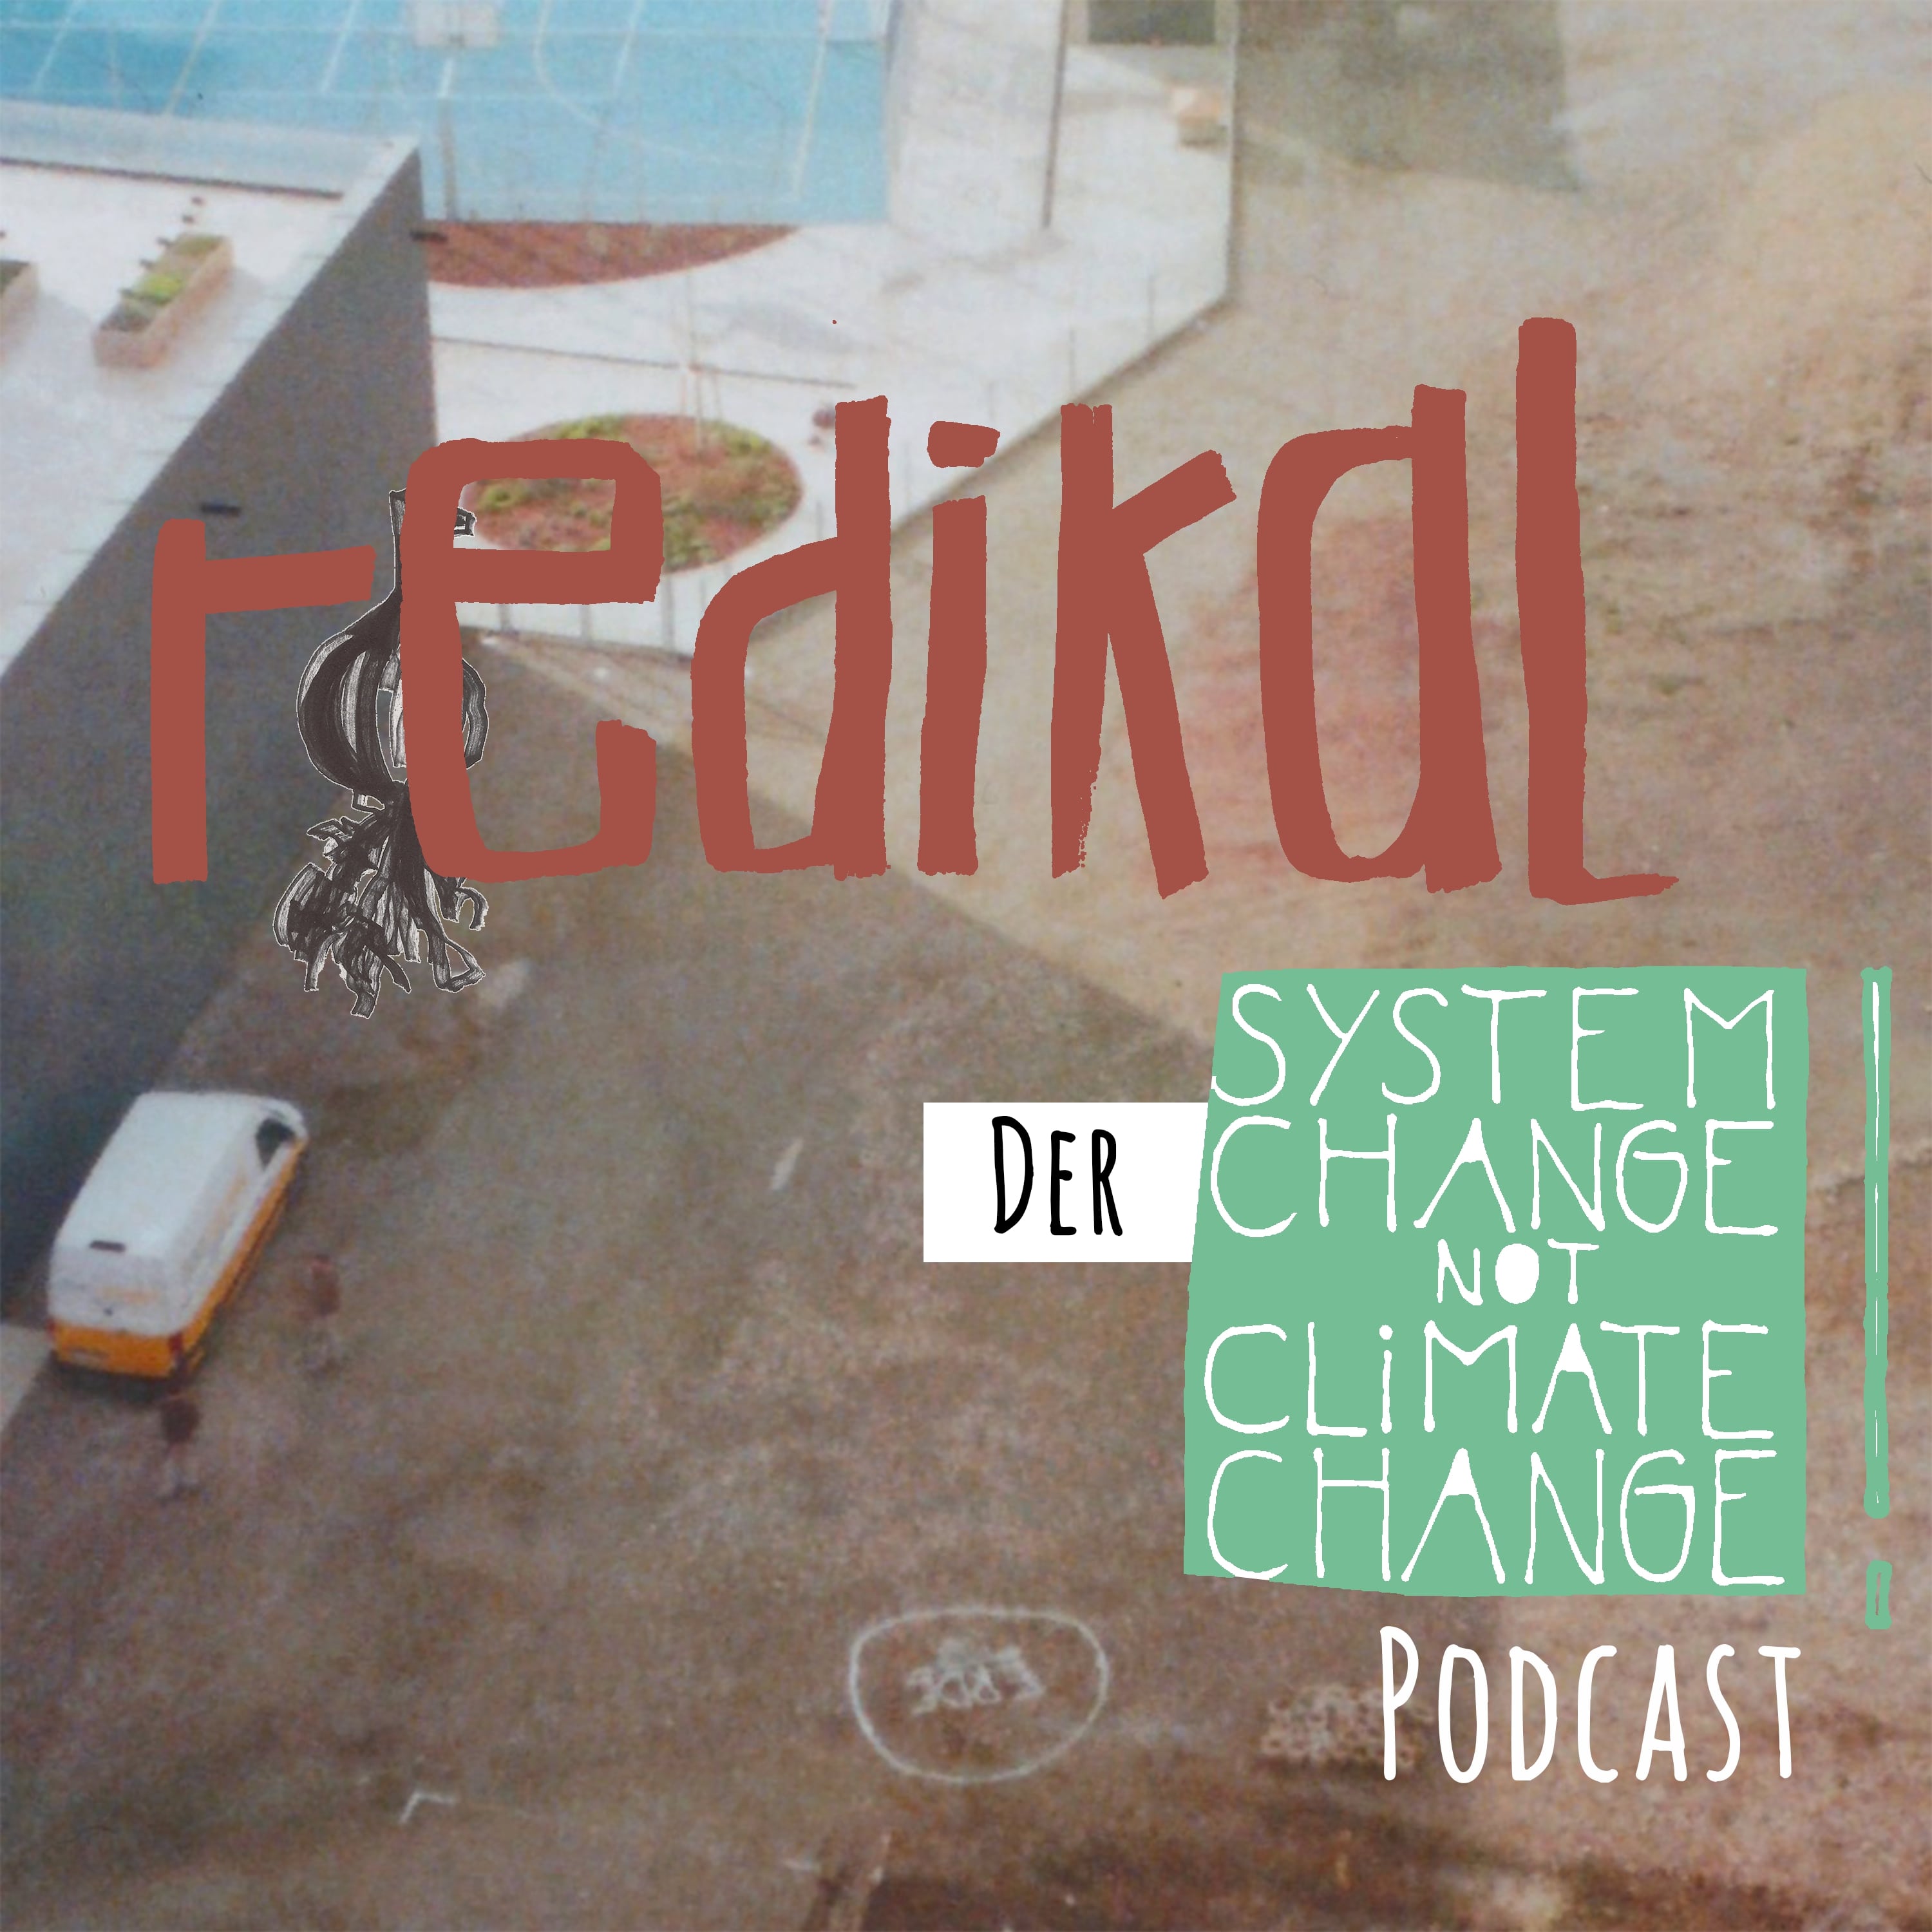 redikal - der System Change not Climate Change Podcast